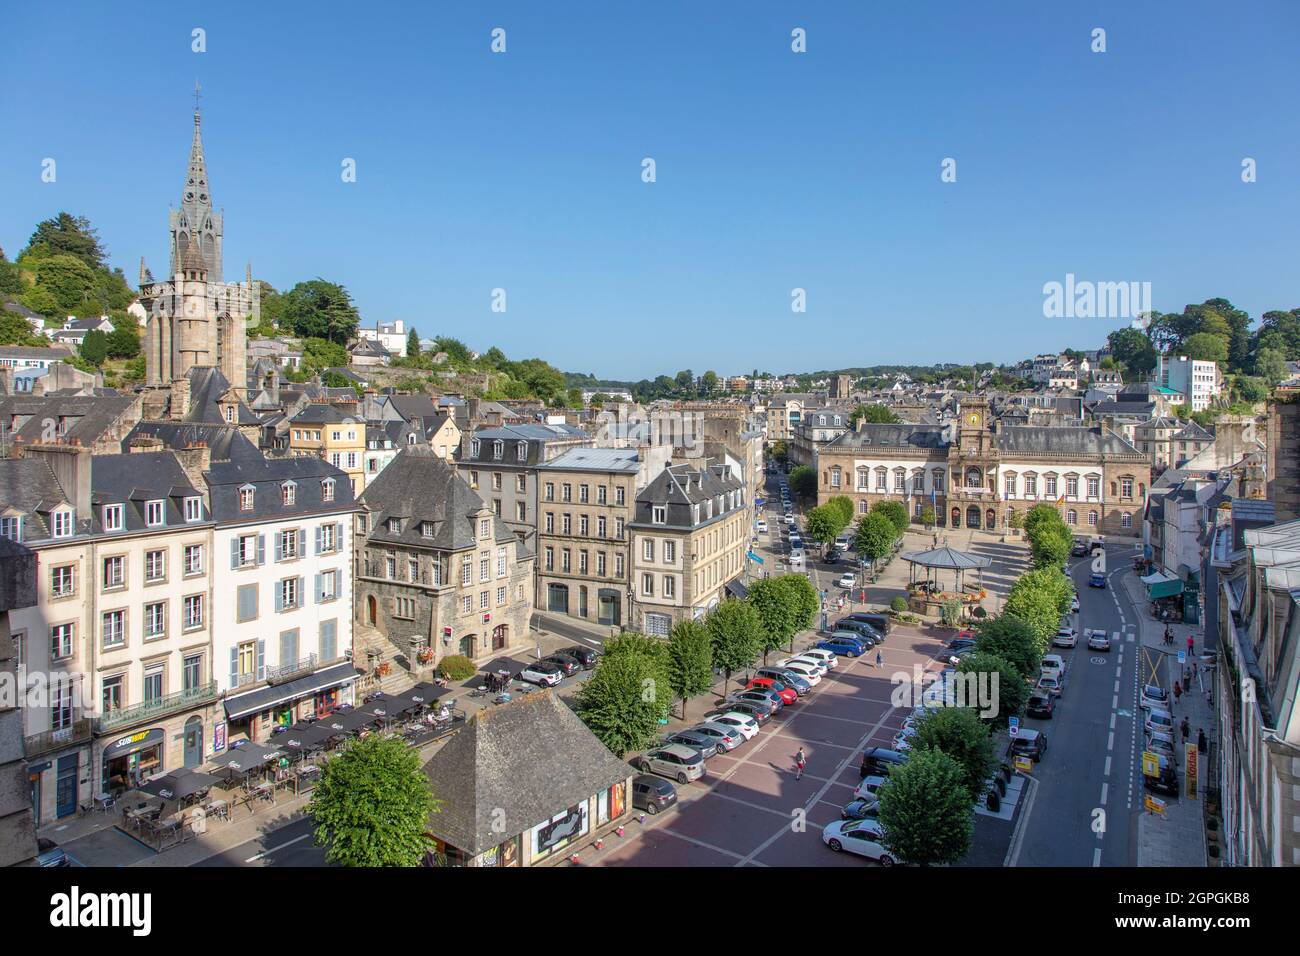 France, Finistère, Morlaix, place des otages, mairie et église Sainte-Melaine Banque D'Images